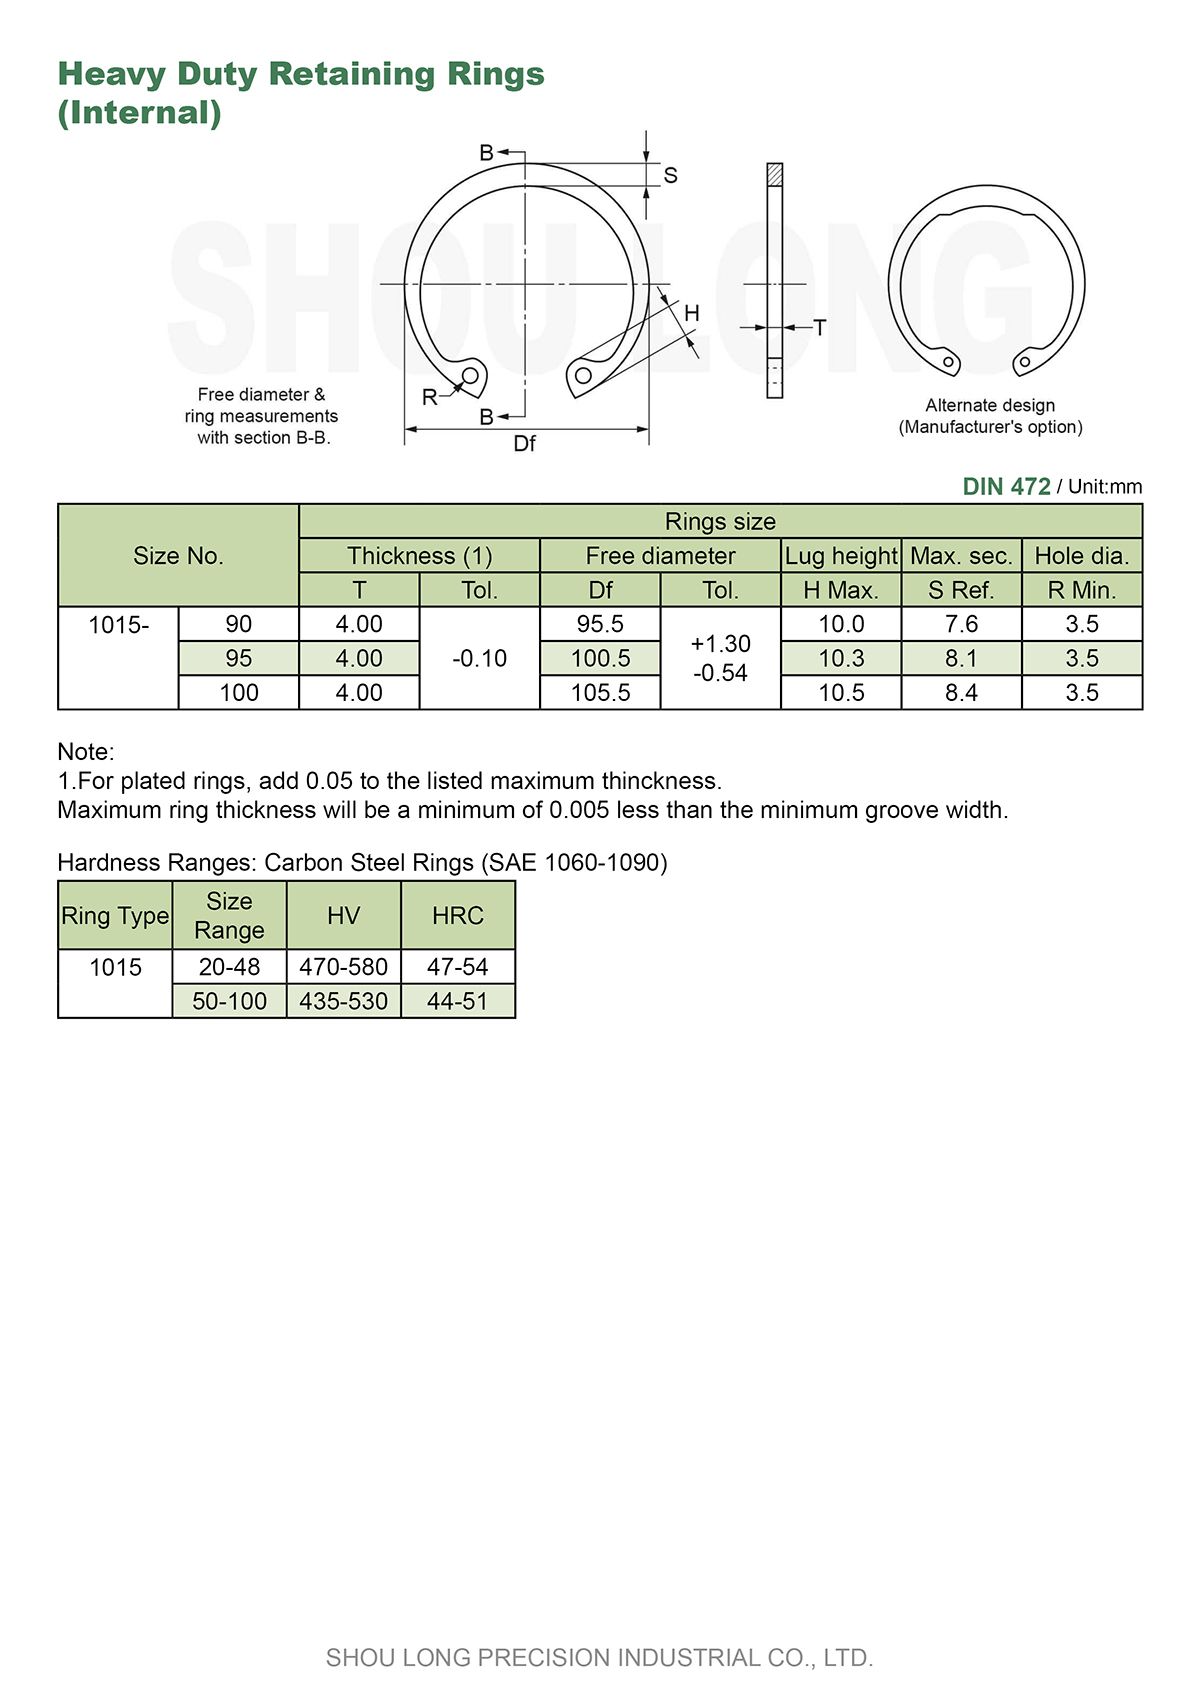 Especificação de Anéis de Retenção Pesados Métricos para Furos DIN472-2